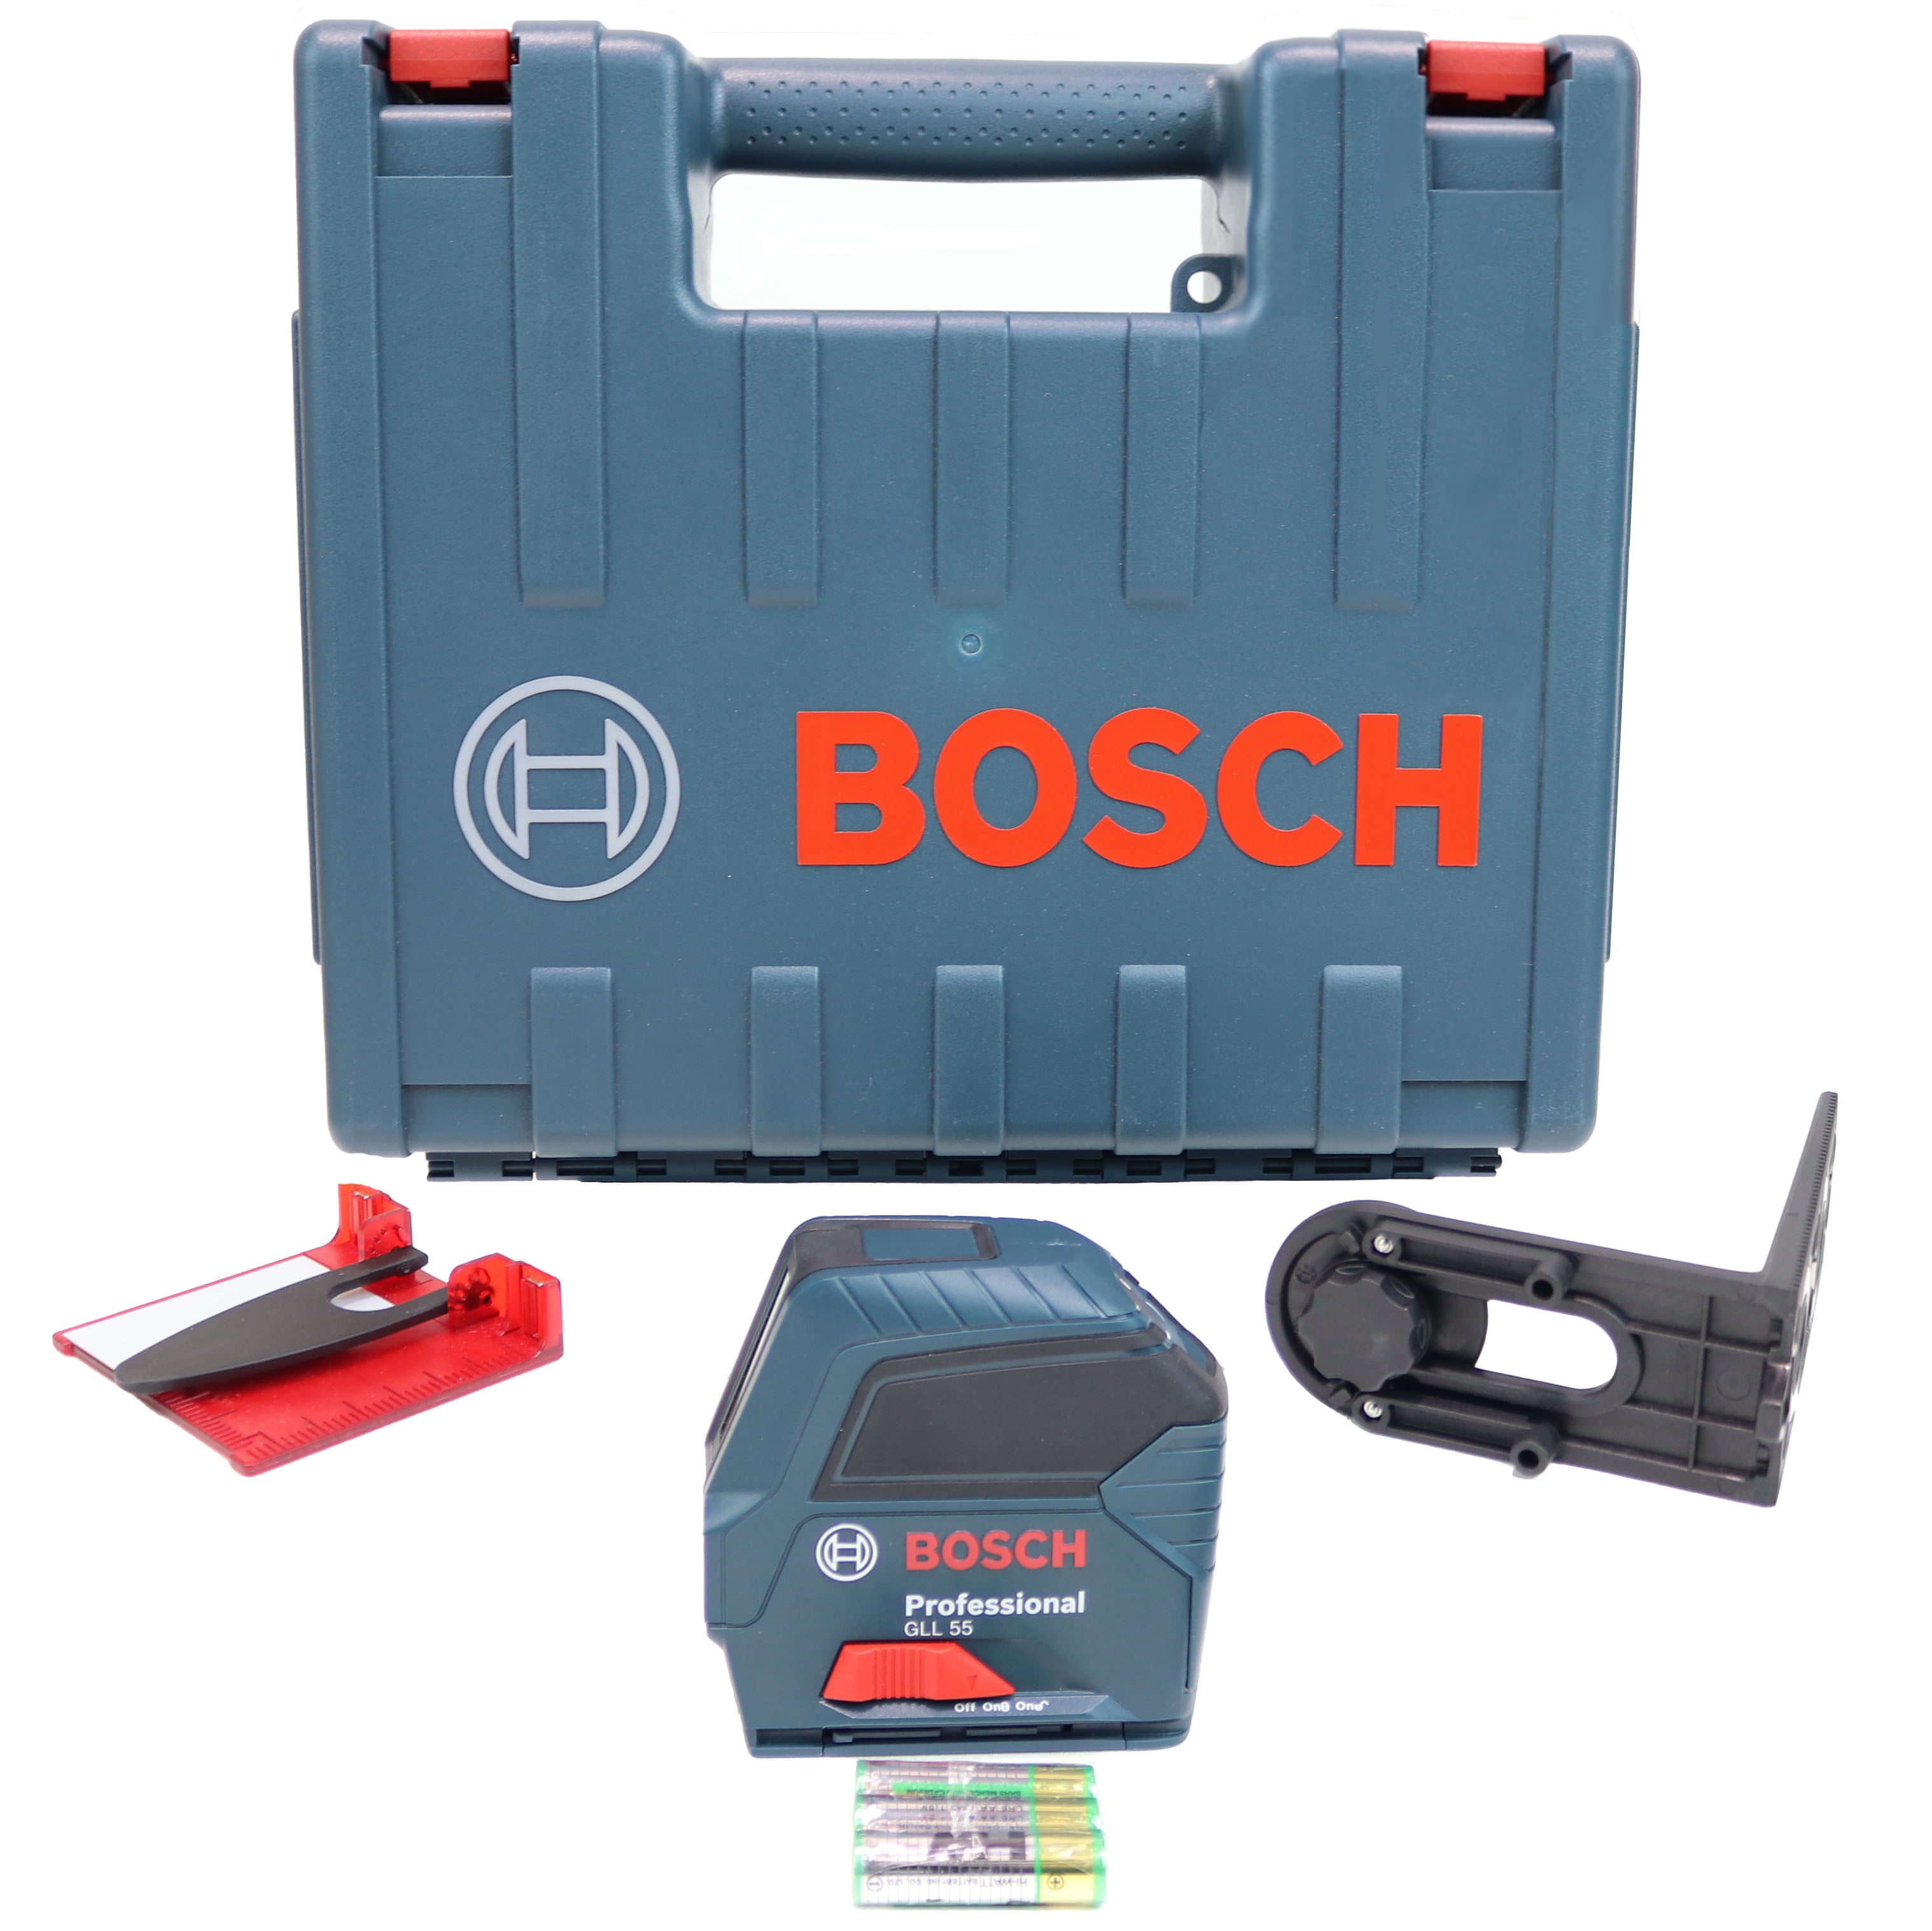 Bosch Laser Tools